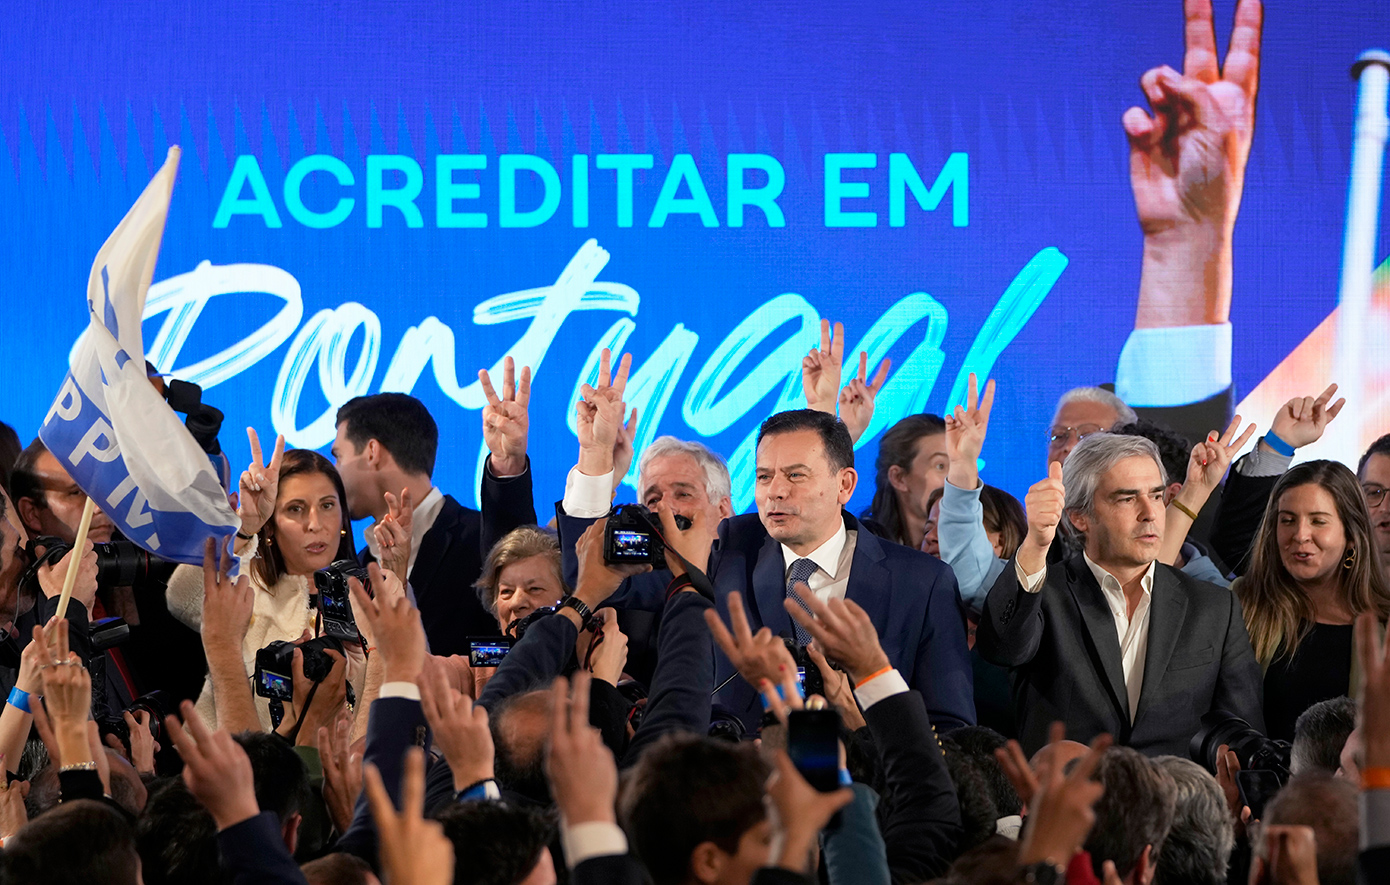 Η κεντροδεξιά Δημοκρατική Συμμαχία κέρδισε με μικρή διαφορά στις εκλογές στην Πορτογαλία